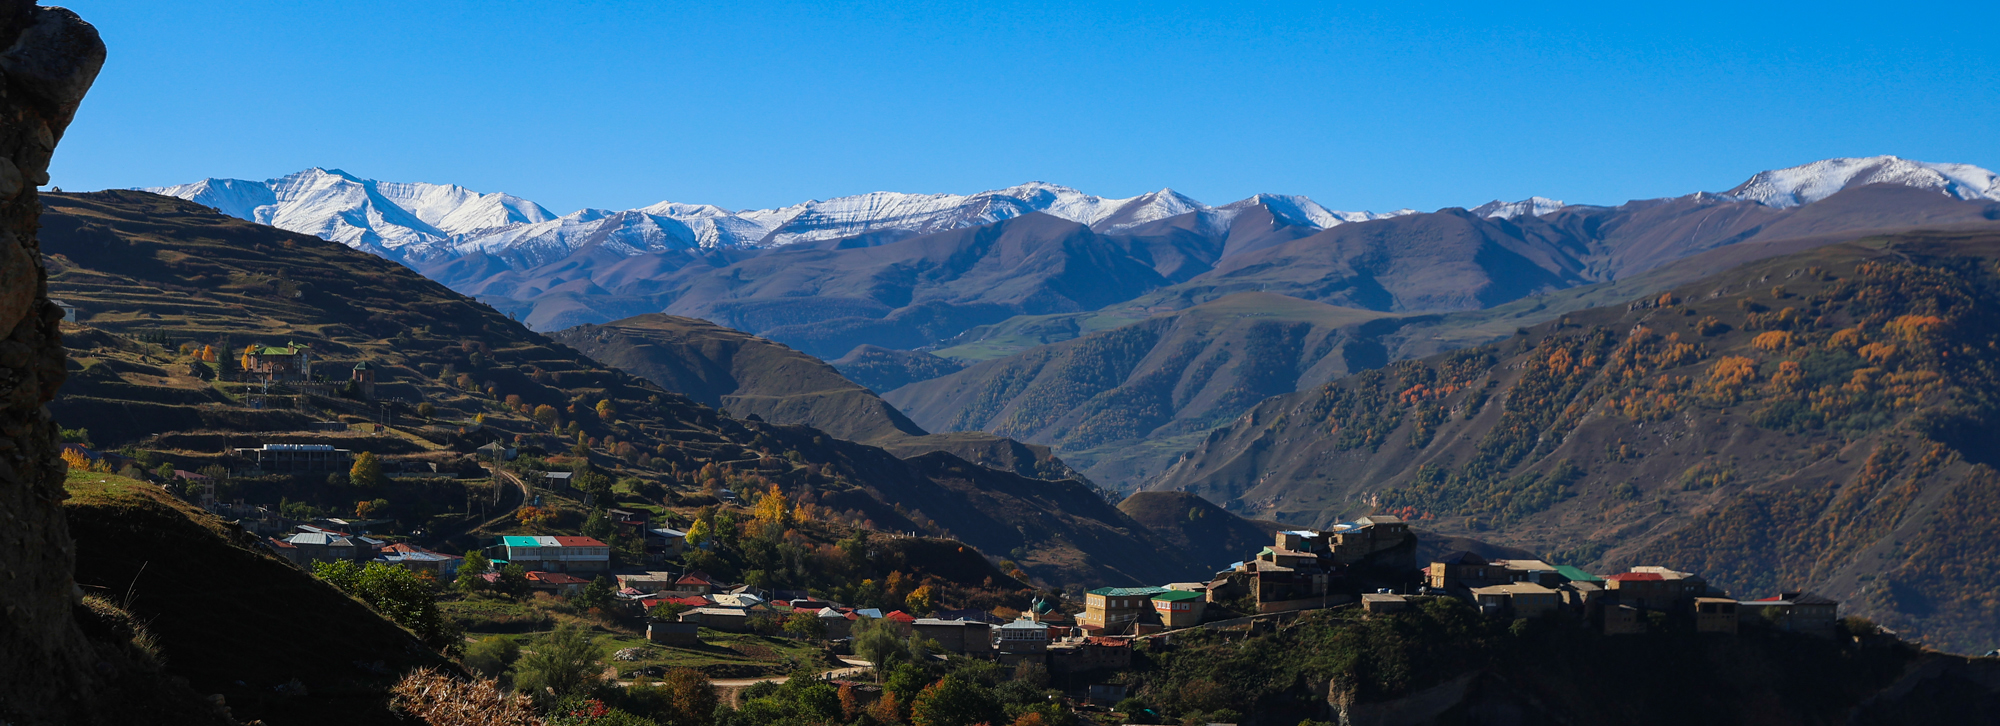 аул,чох,горы,снежные горы,пейзаж,осень,гунибский район,кавказ,северный кавказ,дагестан,, Magov Marat